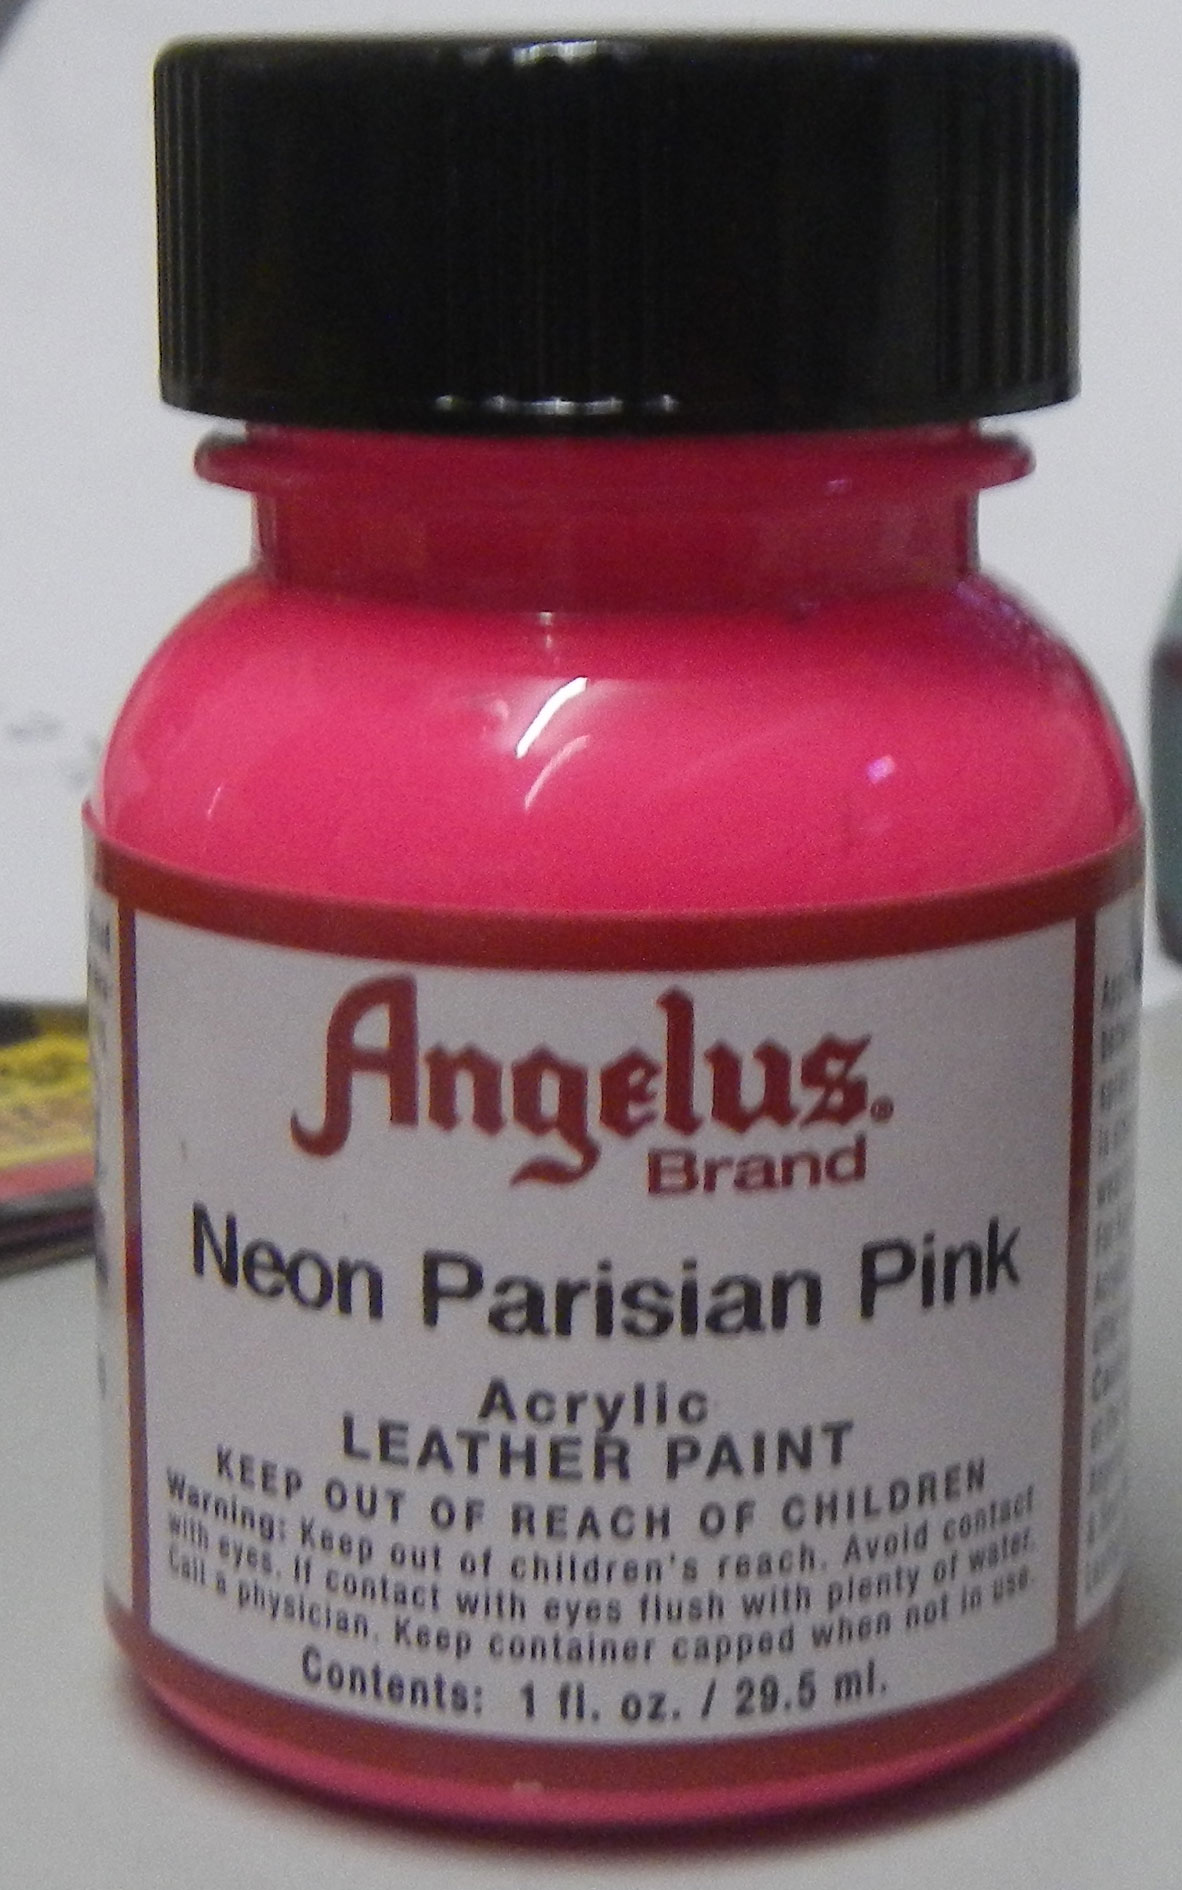 Angelus Neon Leather Paint Neon Parisian Pink